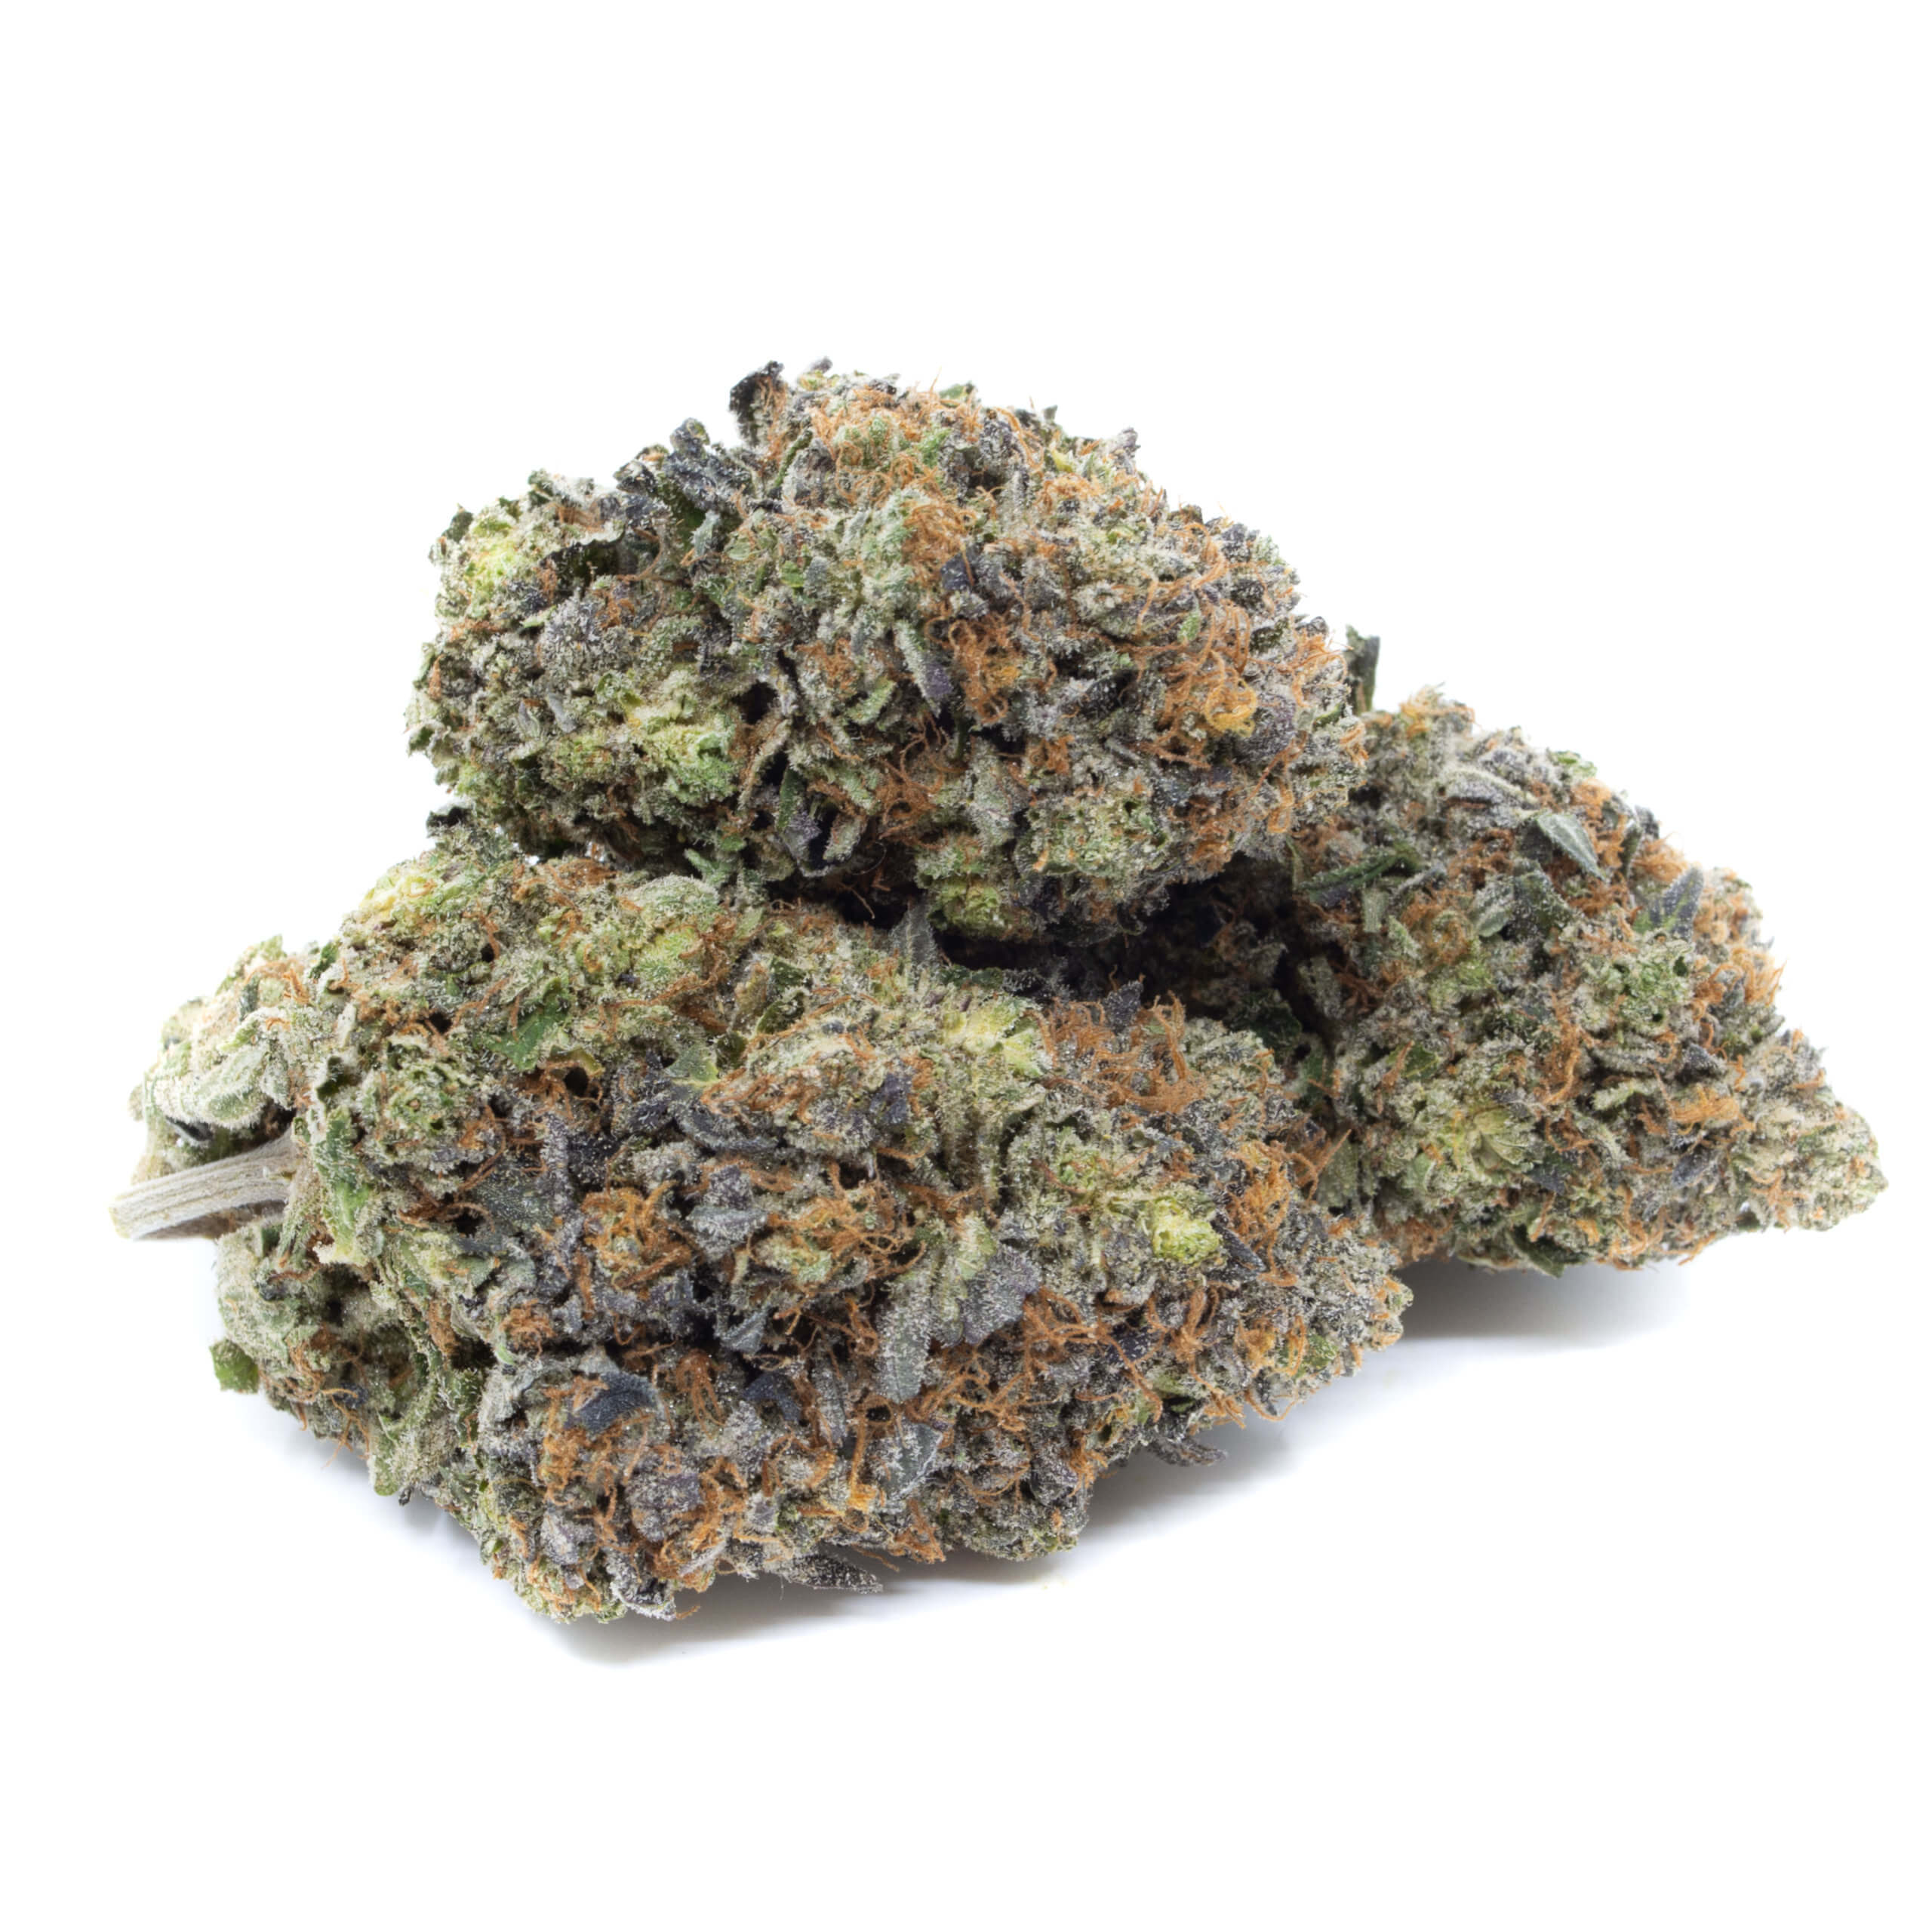 Skywalker OG – My Pure Canna | Buy Cheap Cannabis in Canada!